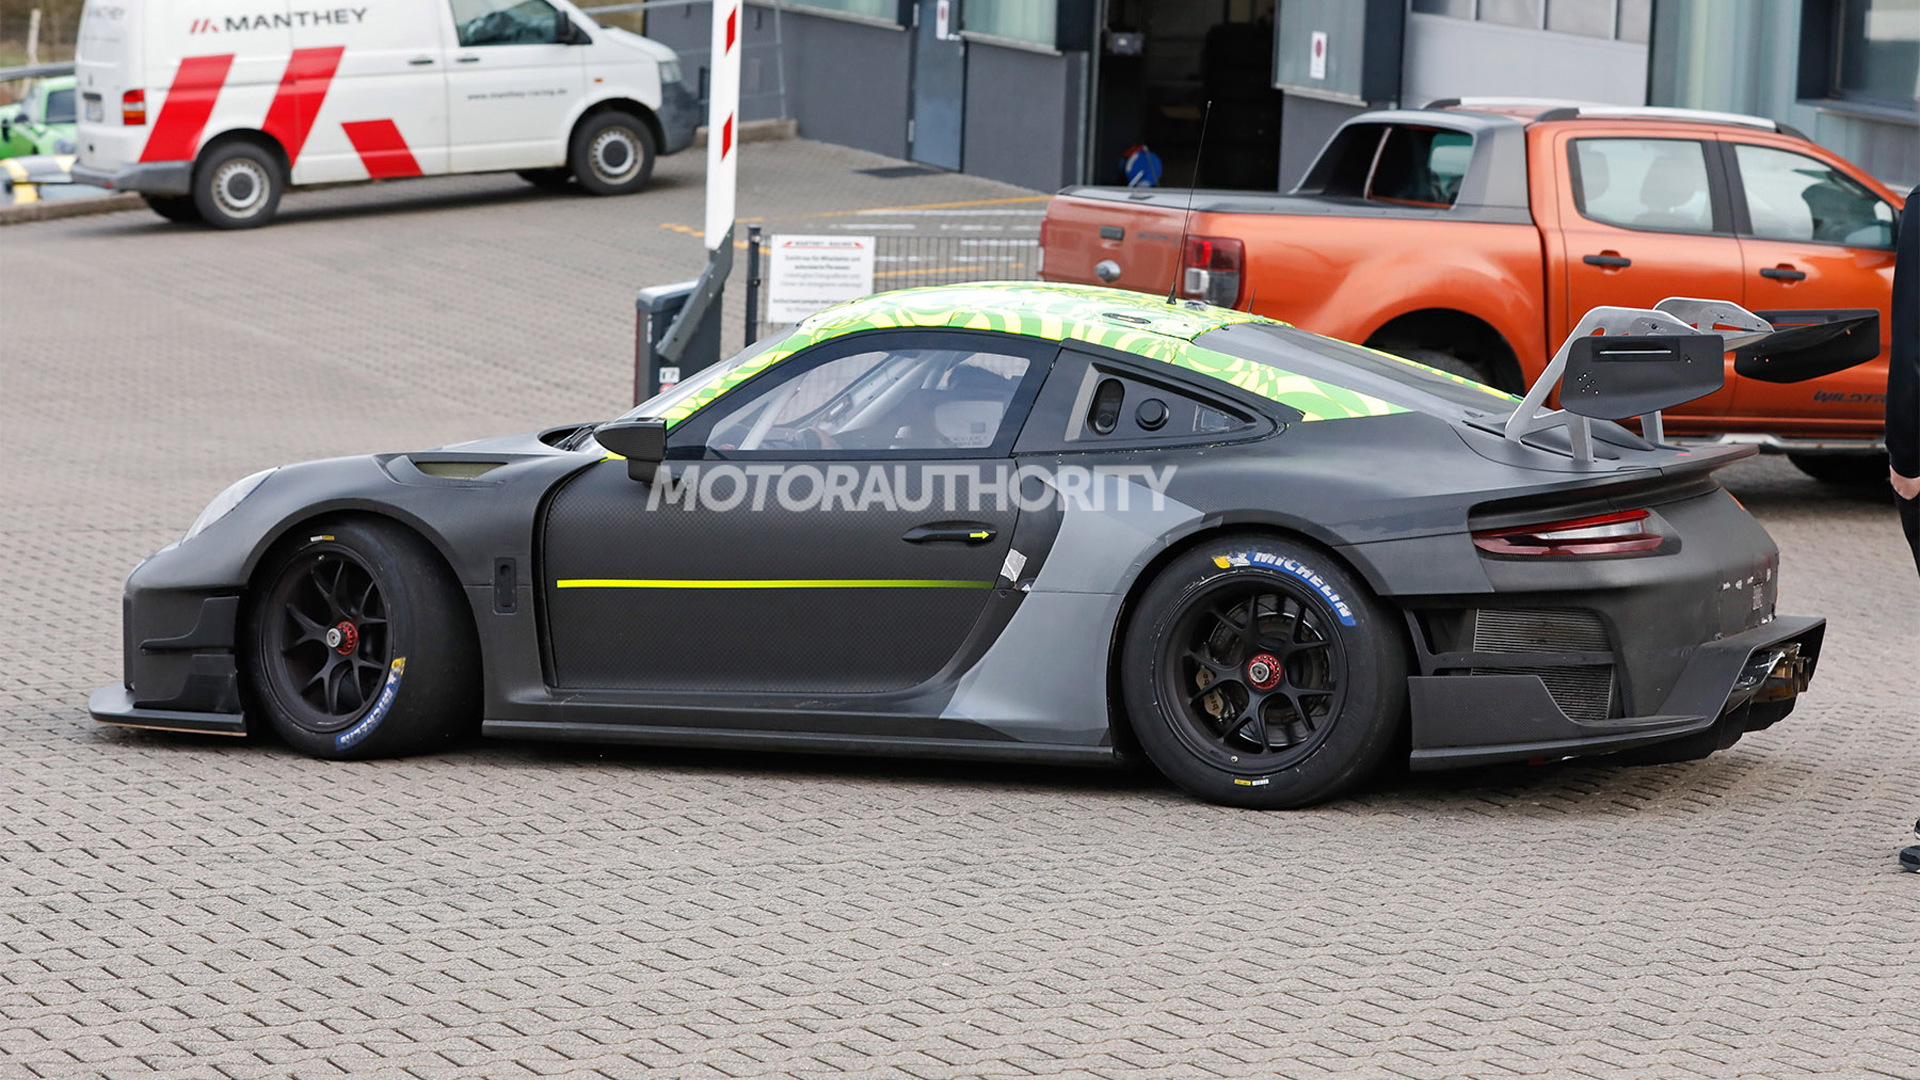 2022 Porsche 911 GT2 RS Clubsport 25 spy shots - Photo credit: S. Baldauf/SB-Medien